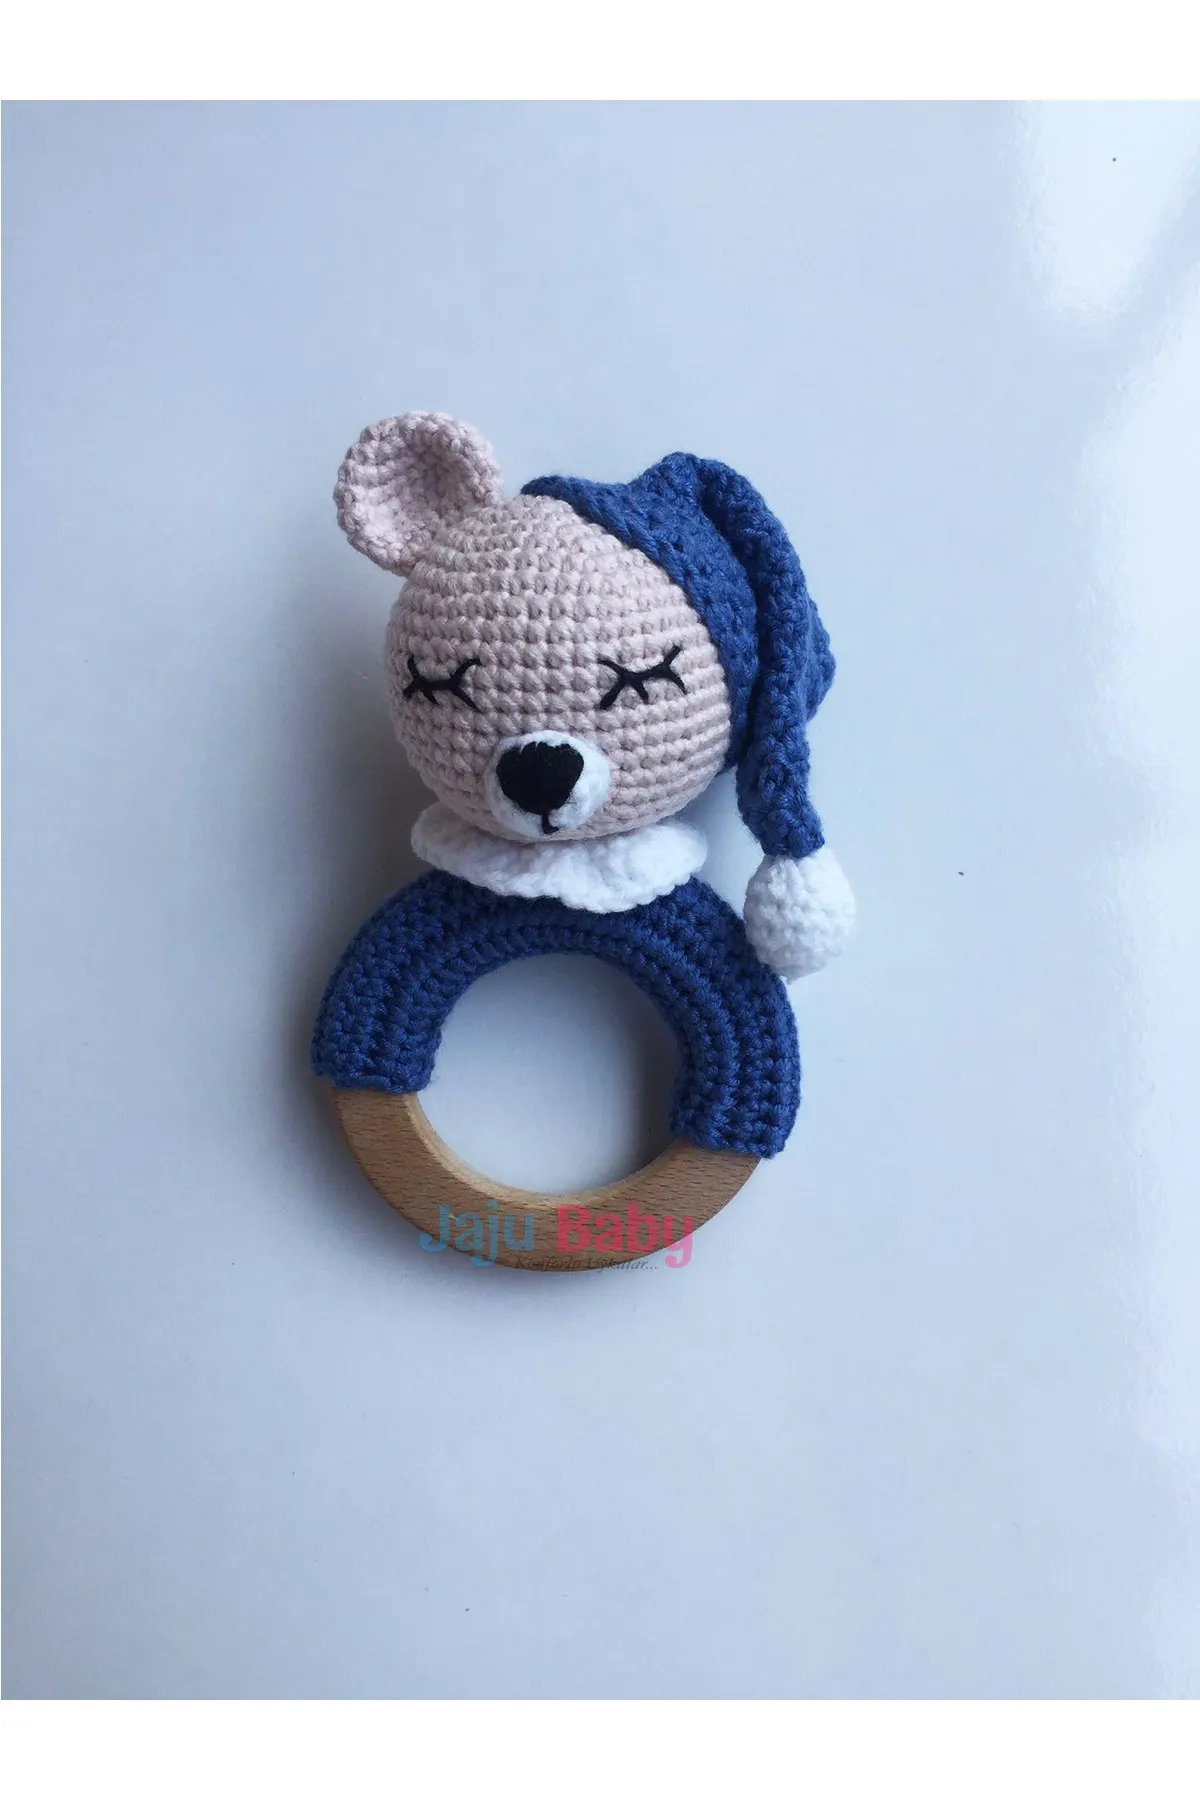 

Jaju Baby Handmade, Amigurumi Sleepy Teddy Bear Teether Rattle 14 cm